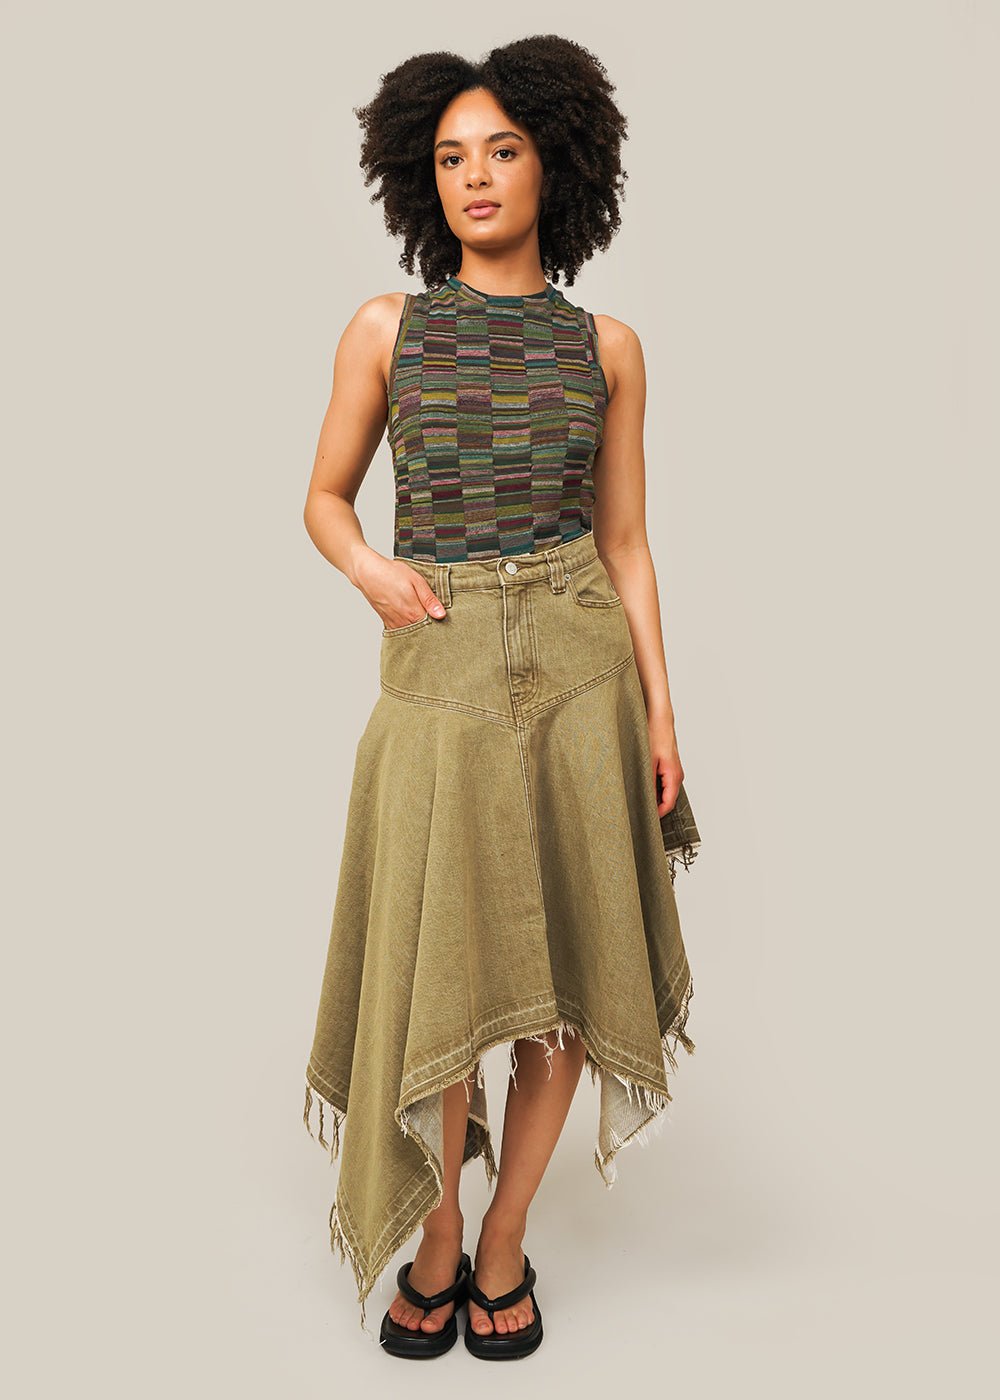 Khaki Homage Asymmetric Skirt